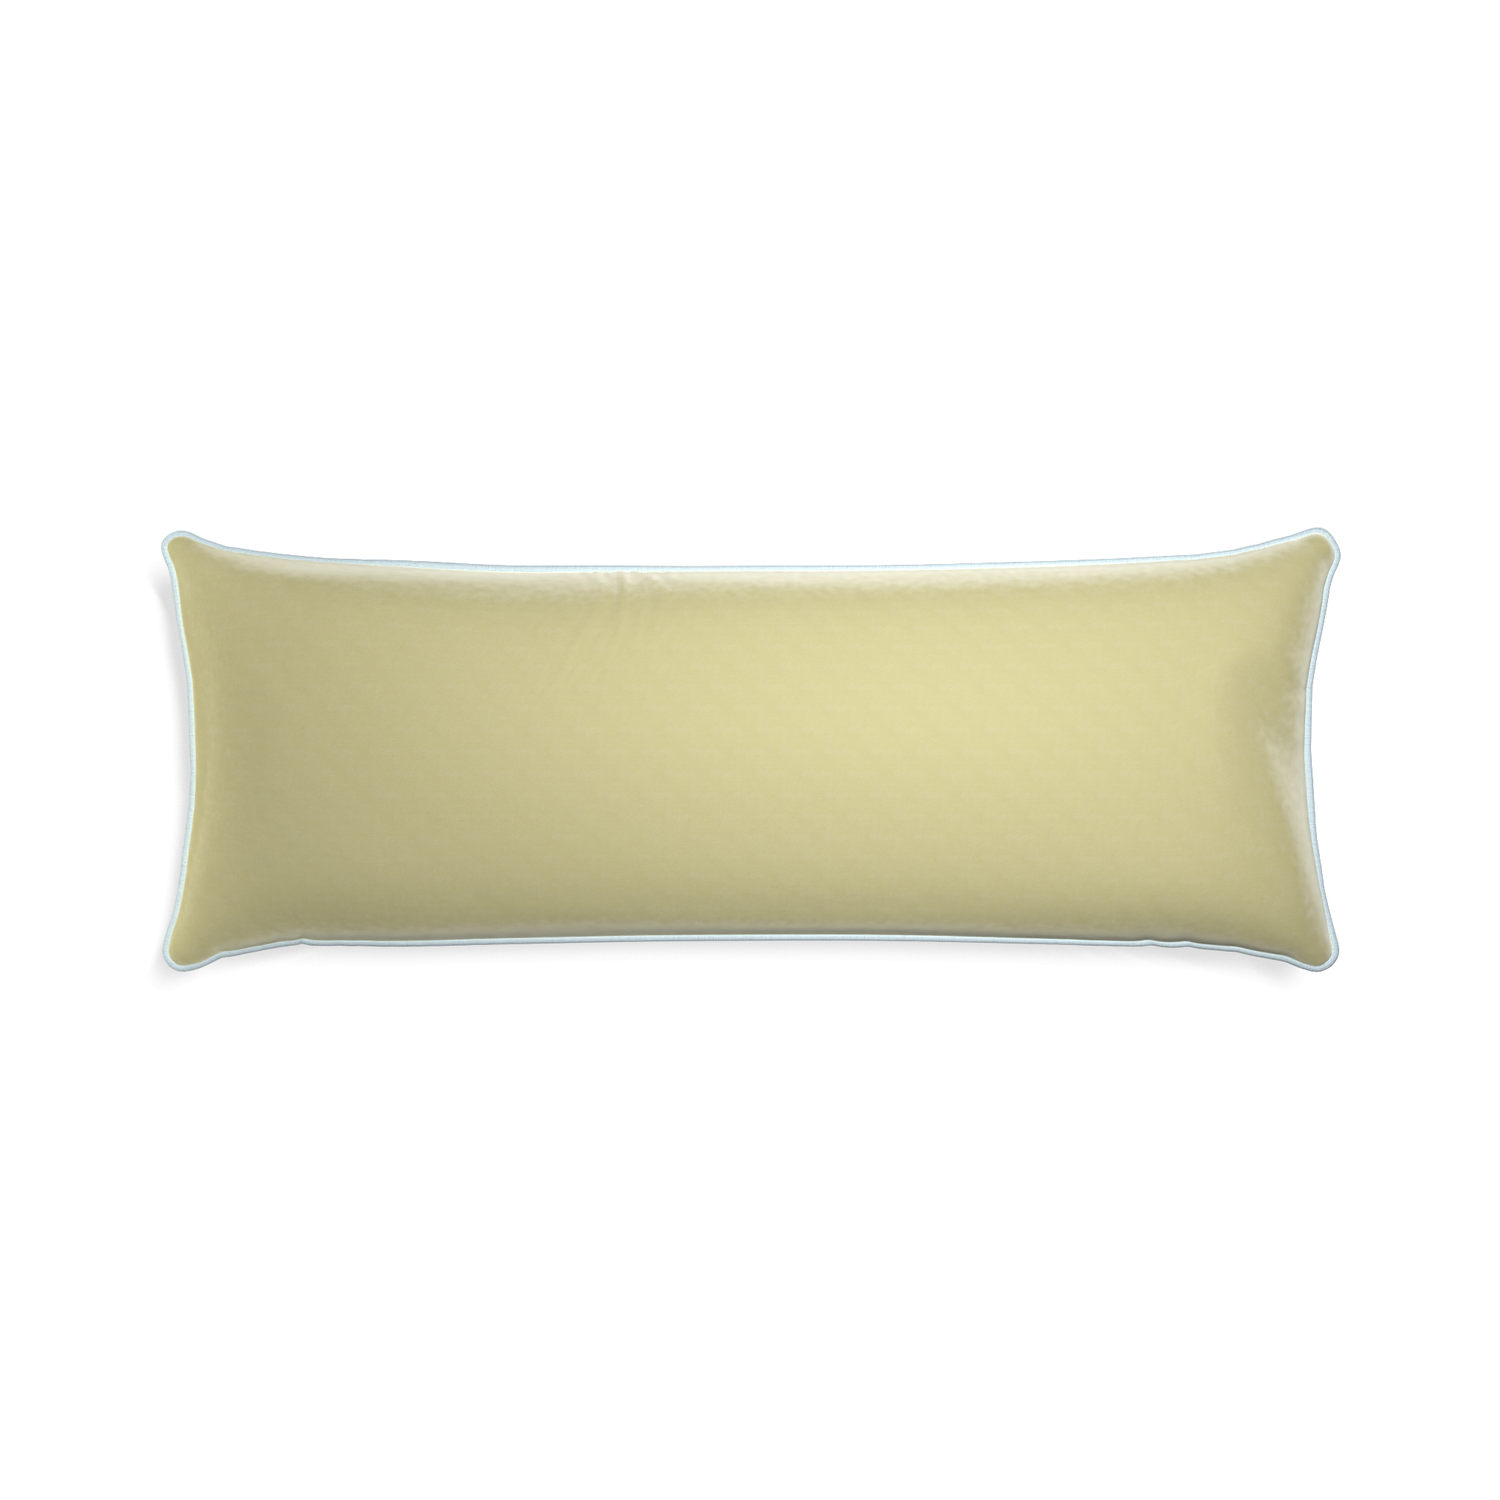 rectangle light green velvet pillow with light blue piping